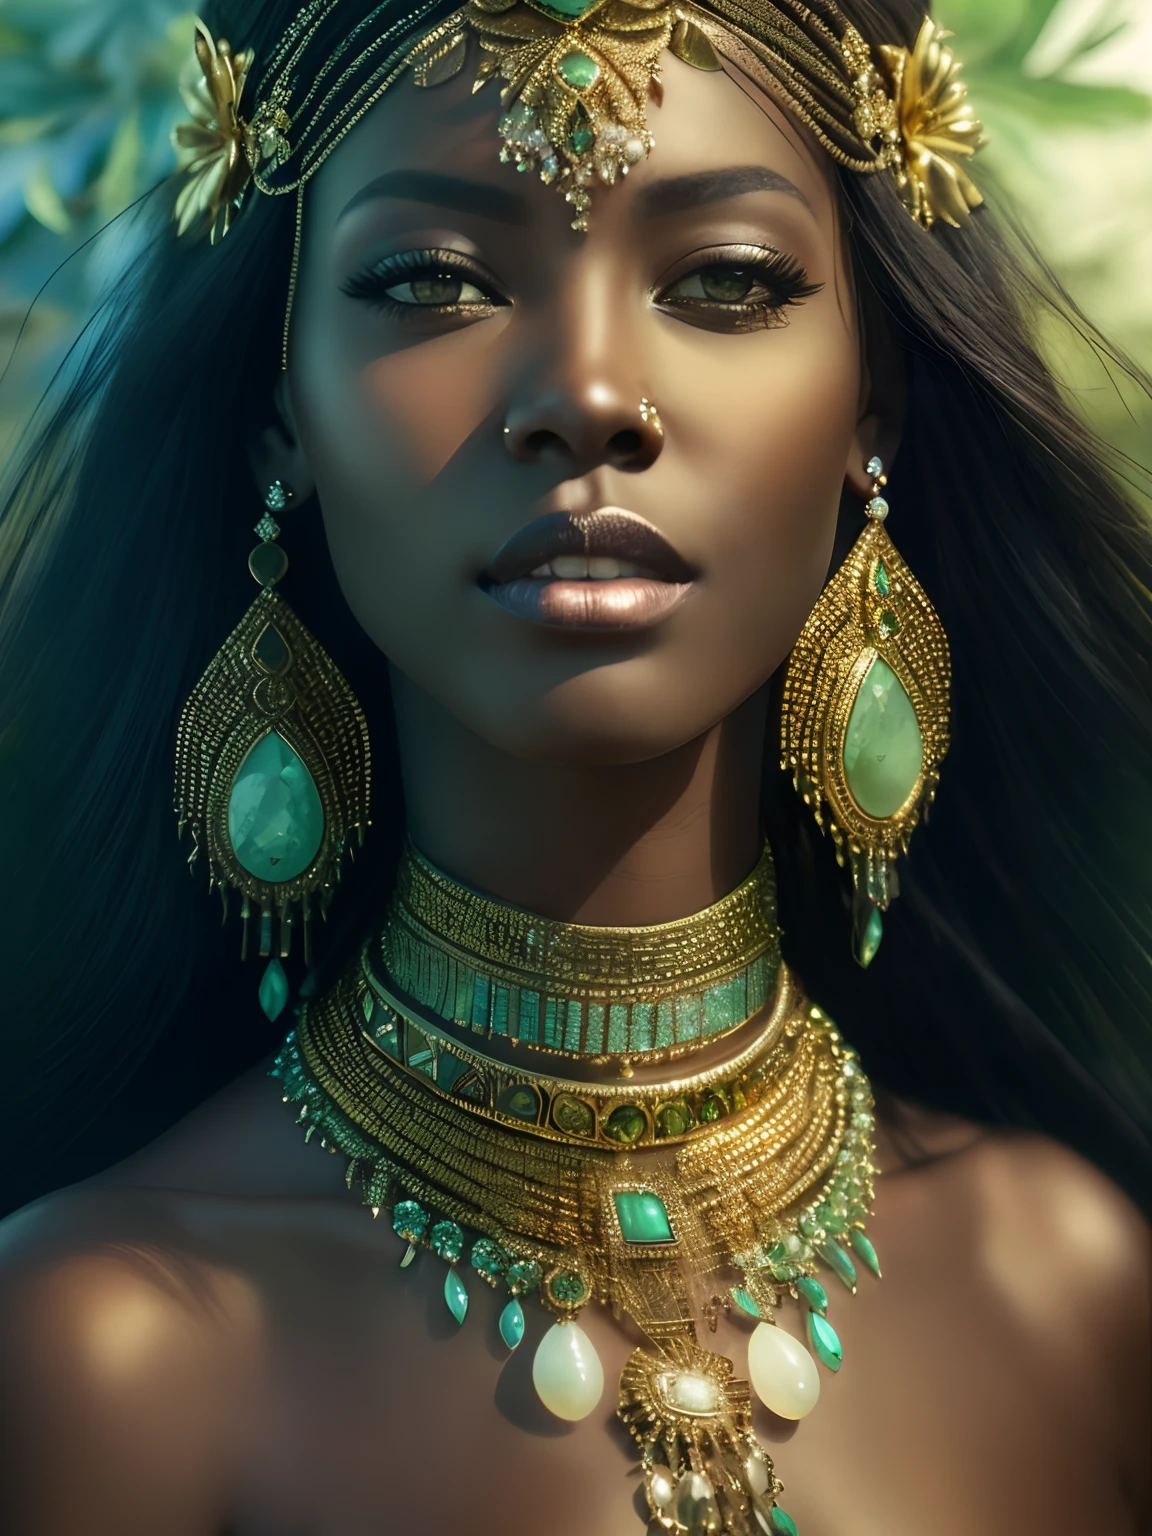 لقطة مقربة لامرأة ترتدي قلادة وأقراط ذهبية وخضراء, stunning الأميرة الأفريقية, dark skin female إلهة of love, a stunning portrait of a إلهة, black الأميرة الأفريقية, إمراة جميلة, إلهة. تفاصيل عالية للغاية, portrait of a beautiful إلهة, إلهة close-up portrait, إمبراطورة الخيال الجميلة, الأميرة الأفريقية, ملحمة 3 د أوشون